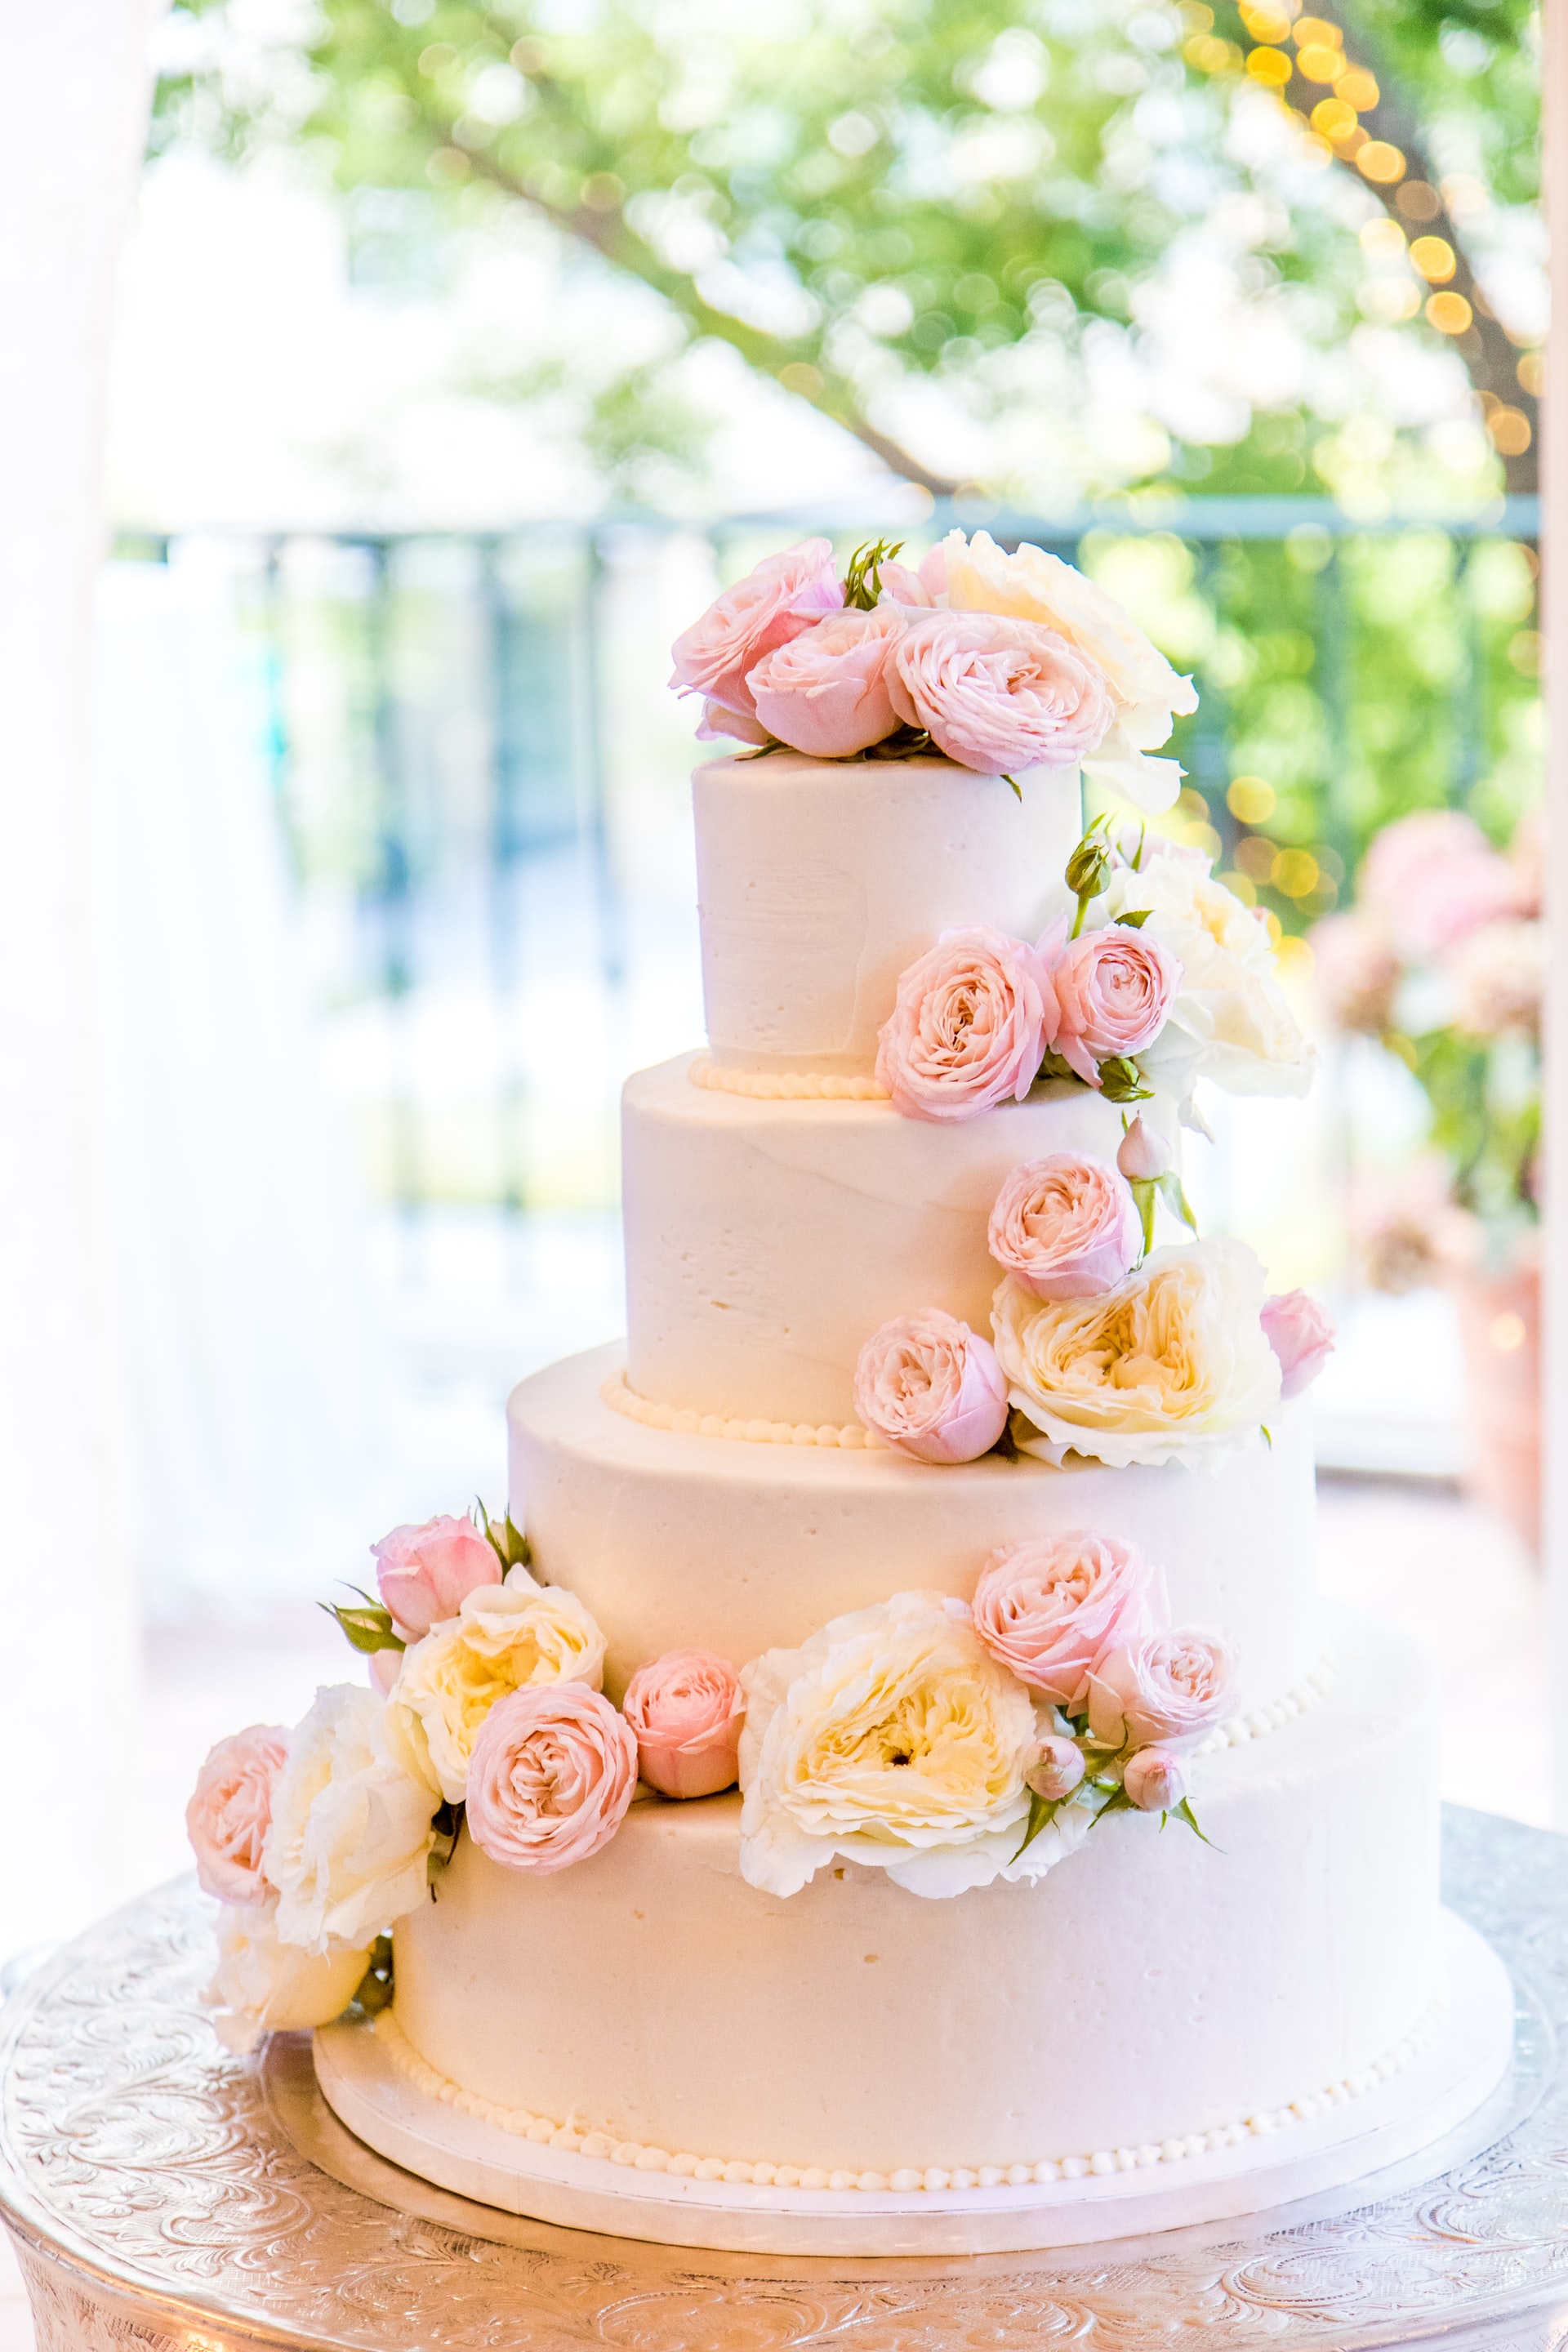 Engagement or Wedding Cake | Cake decorating designs, Engagement cake  design, Engagement cakes